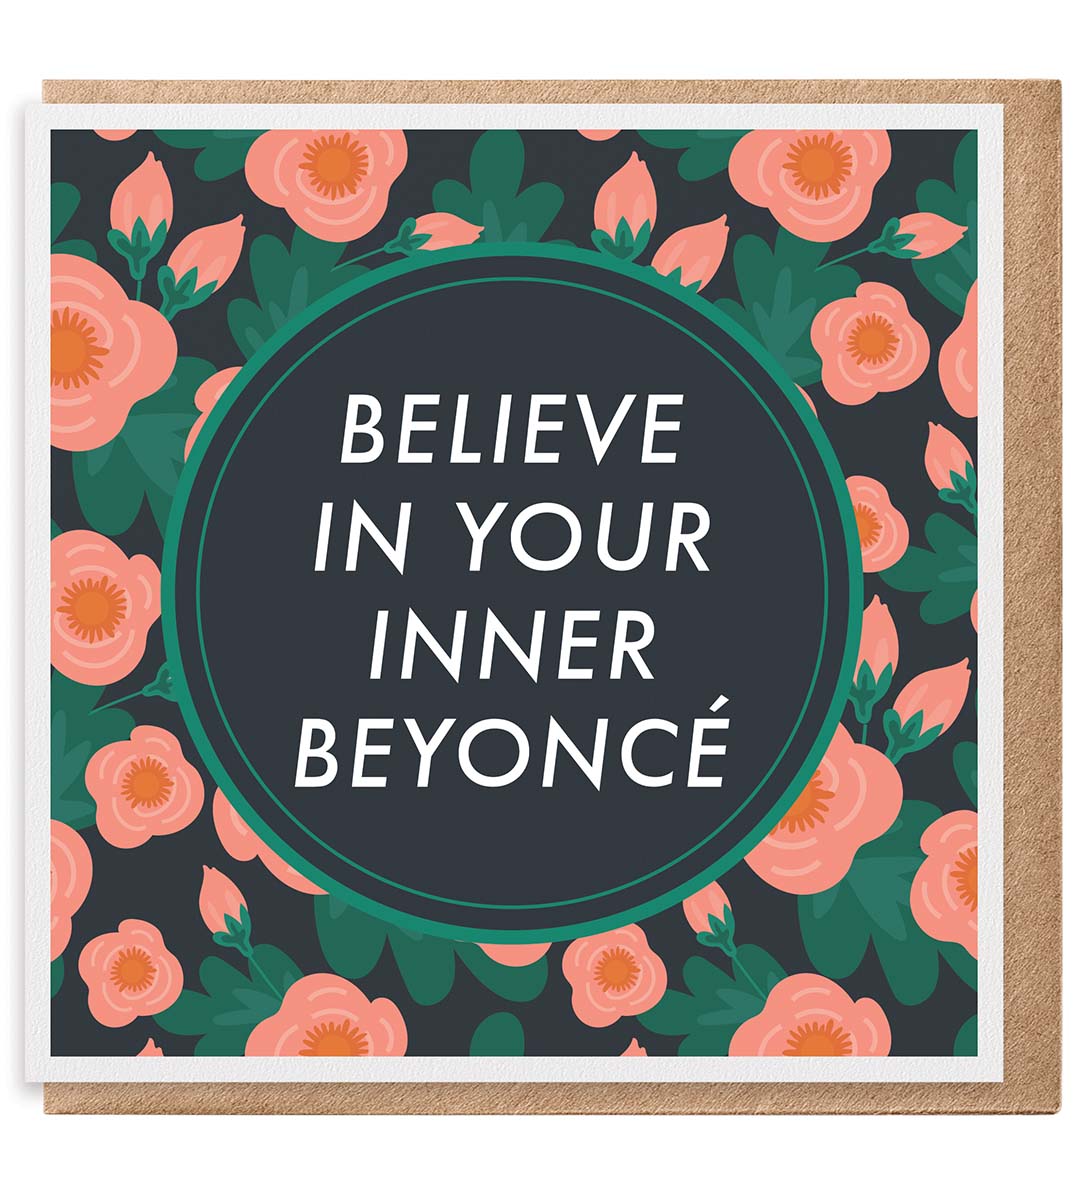 Inner Beyoncé Coaster, Magnet, Towel or Greeting Card Set 
															/ Paisley & Parsley							